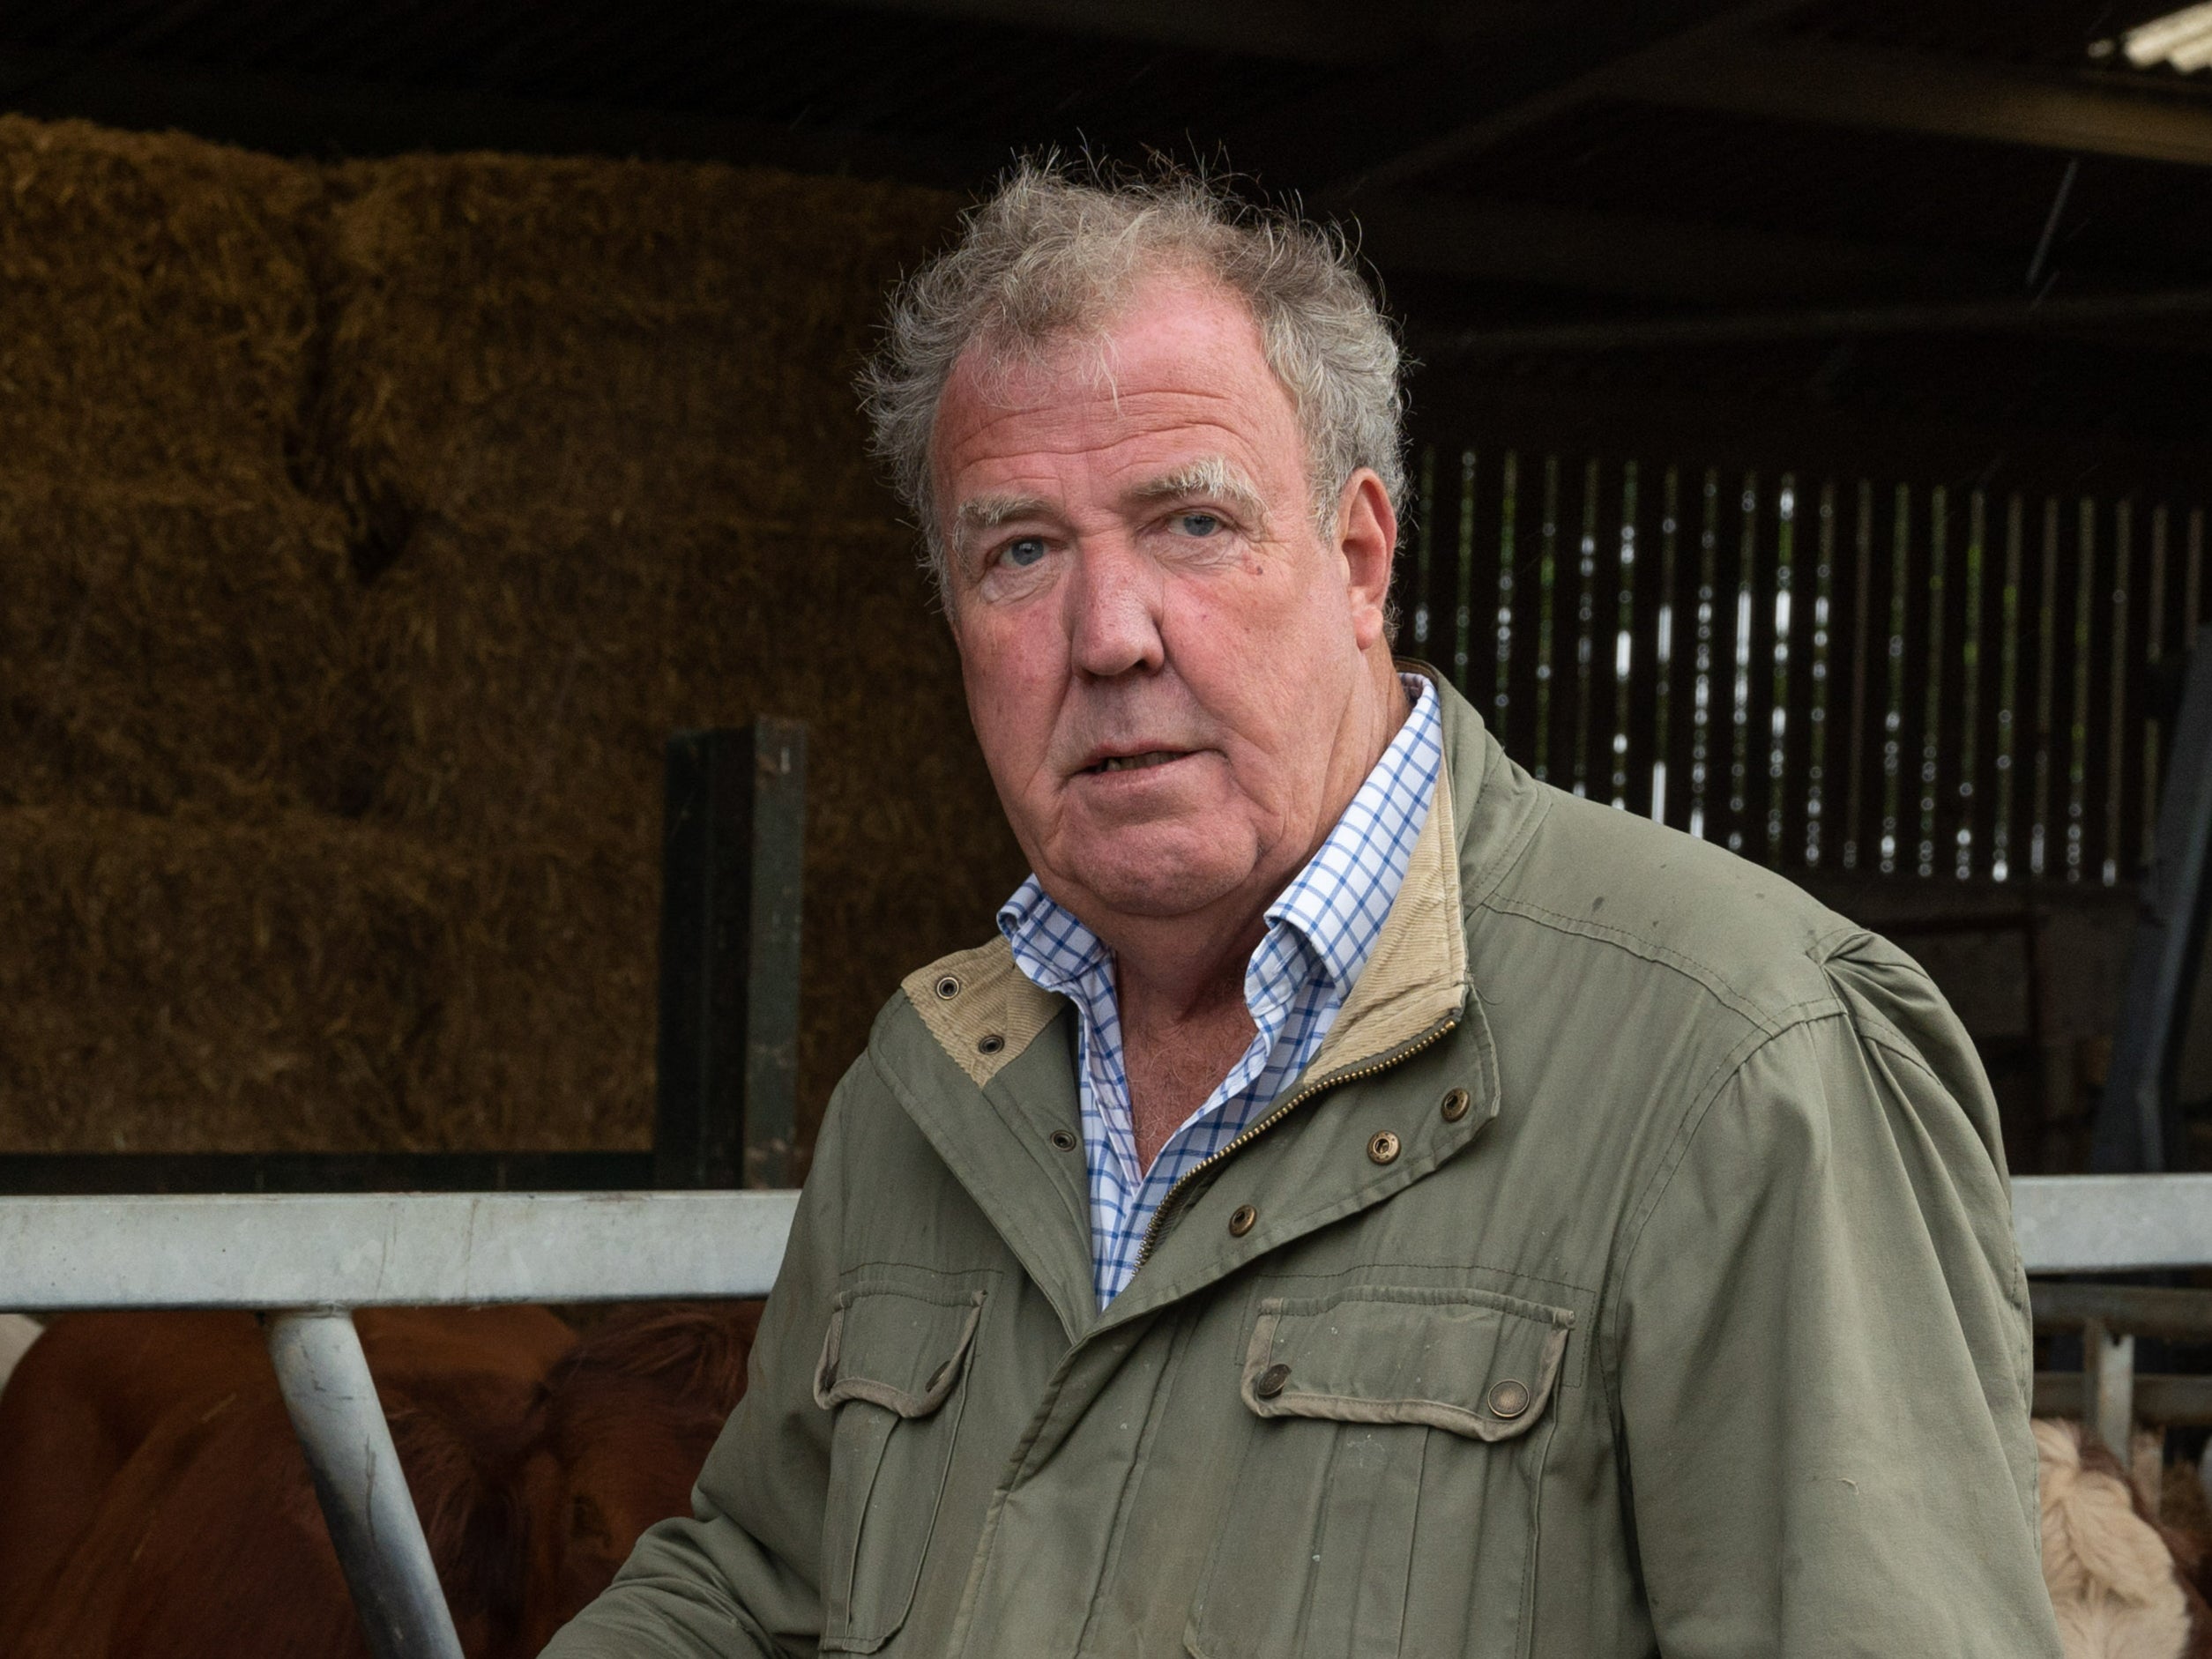 Jeremy Clarkson on ‘Clarkson’s Farm’